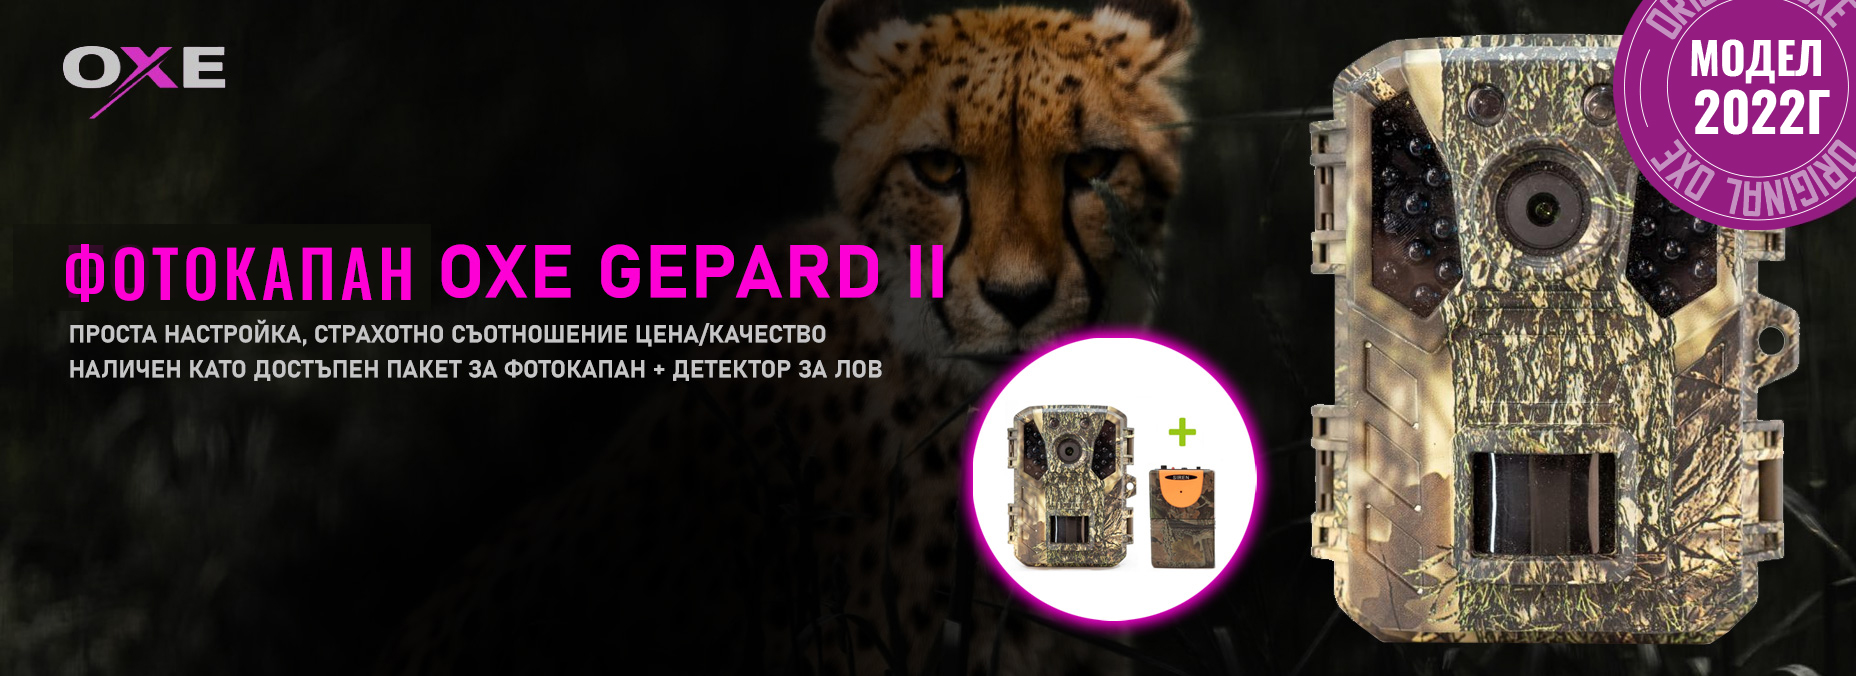 OXE Gepard II